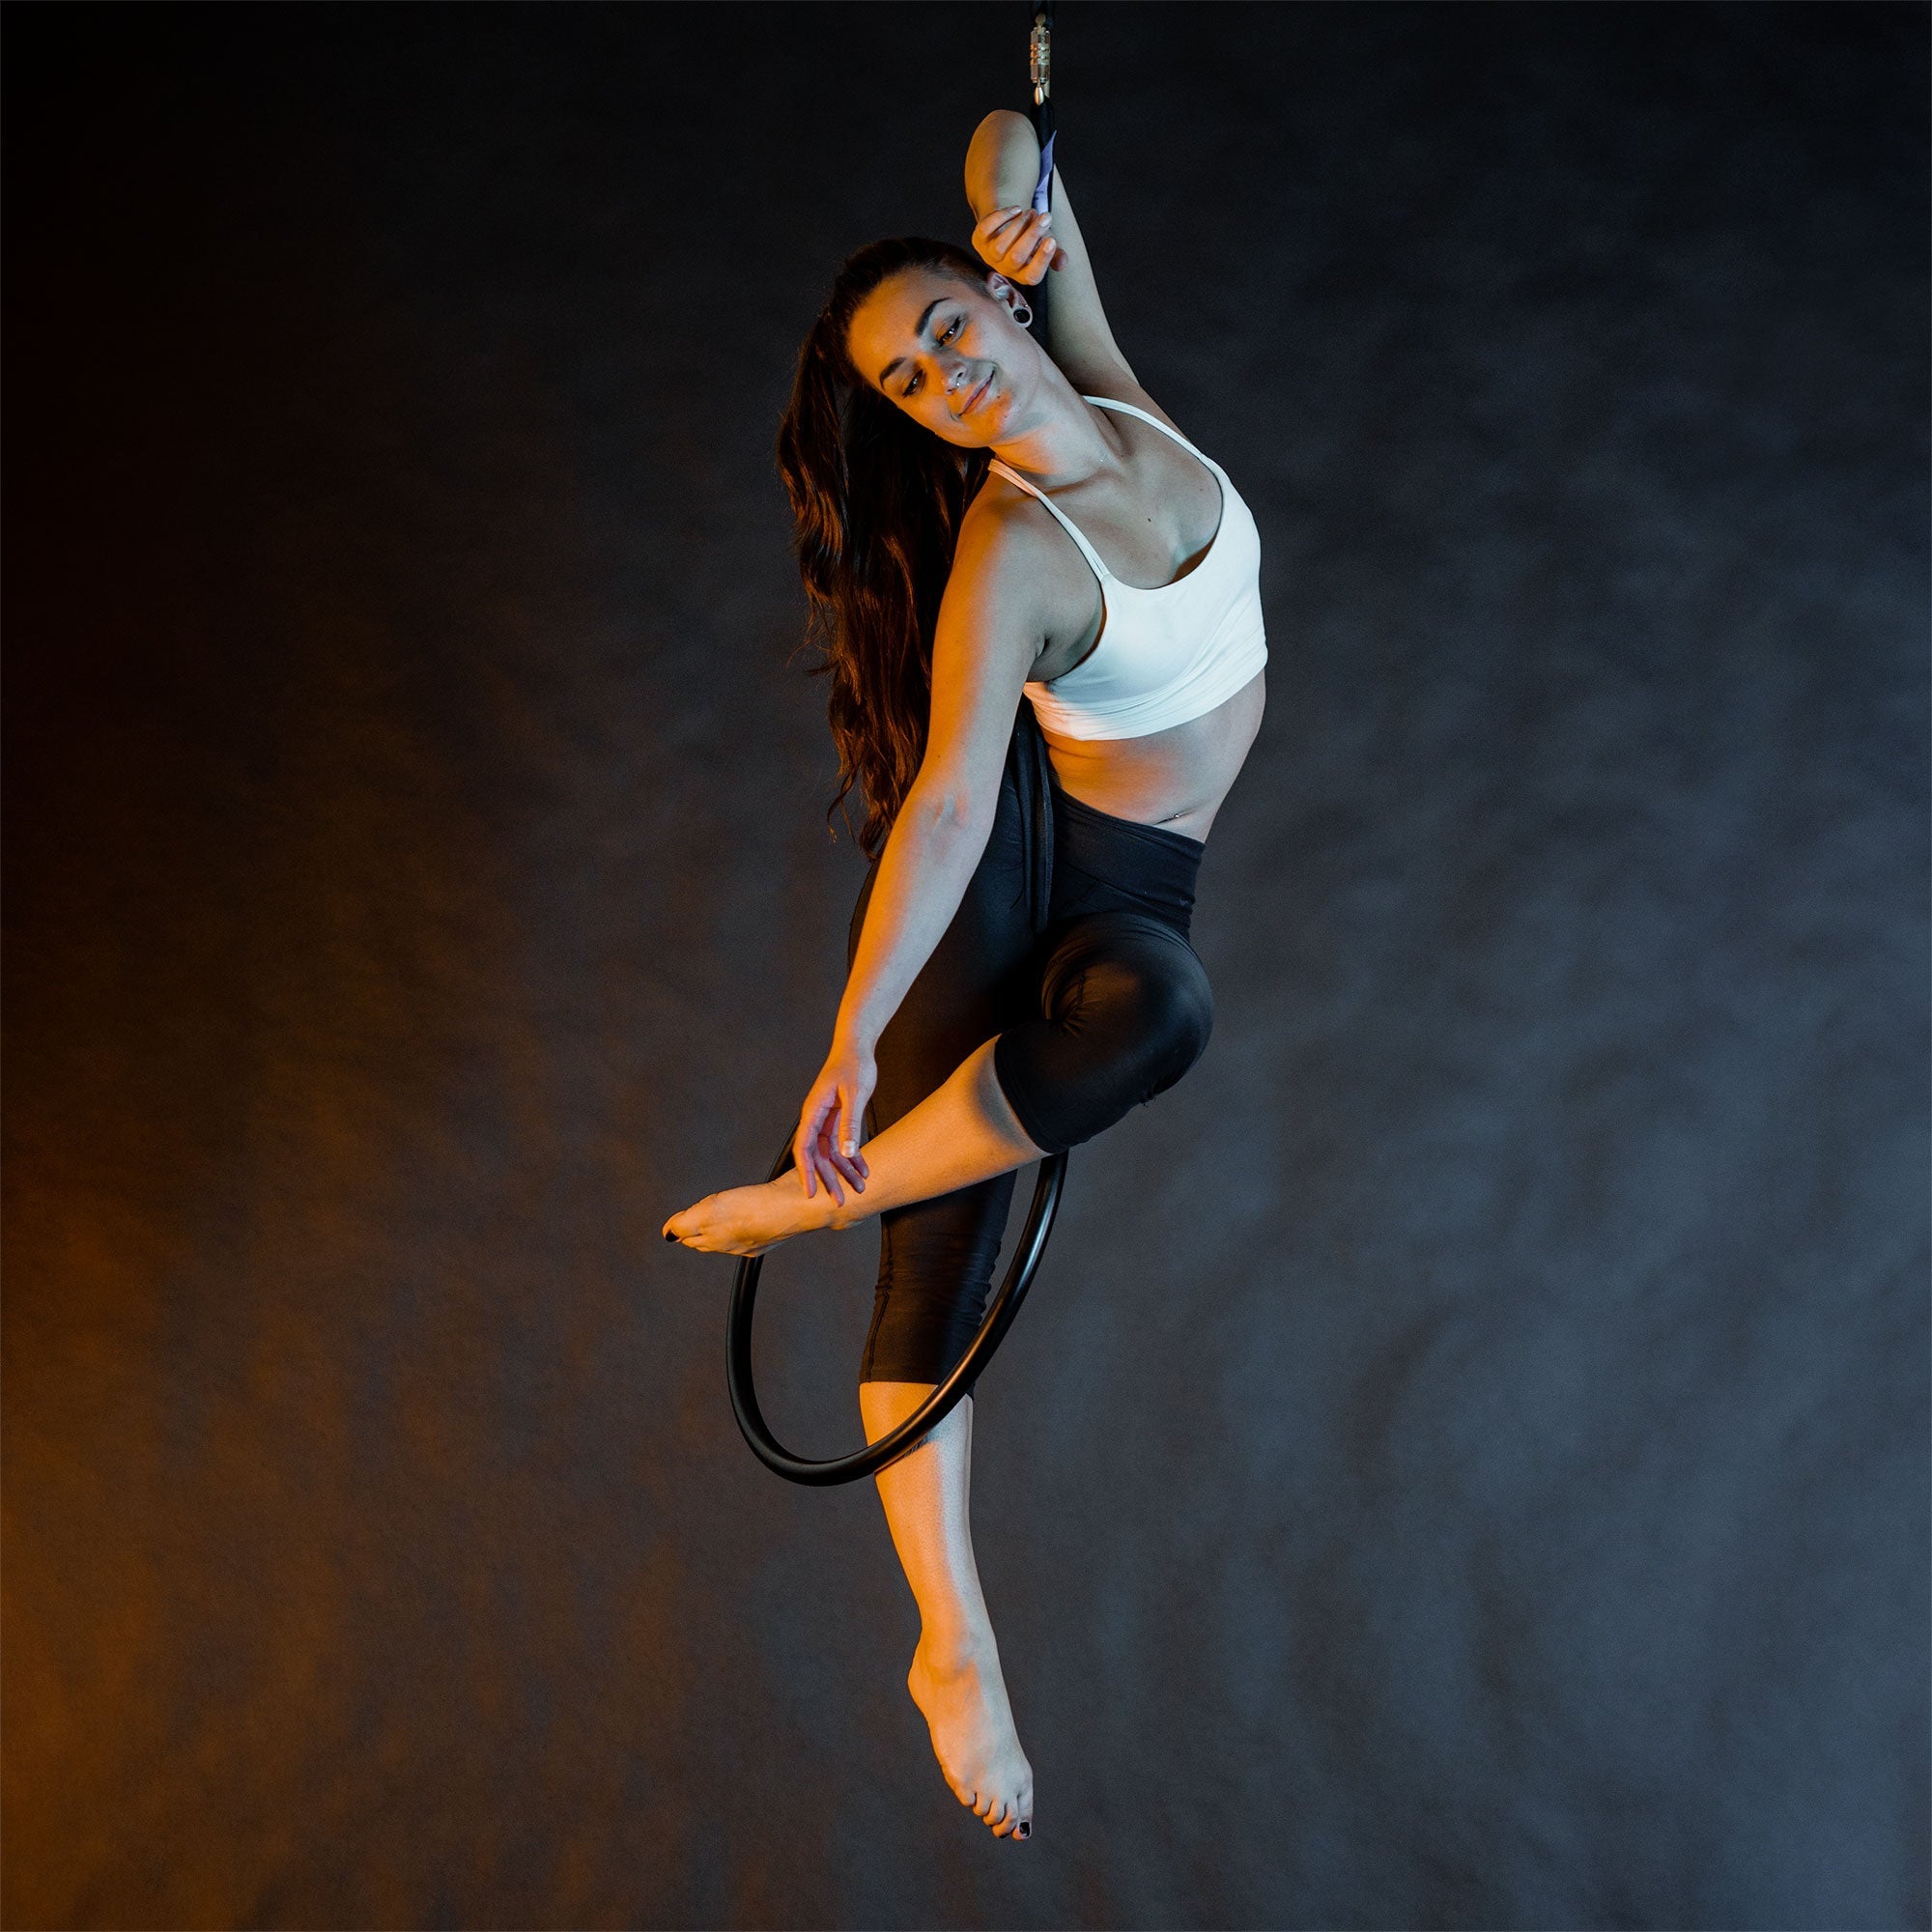 performer on mini aerial hoop